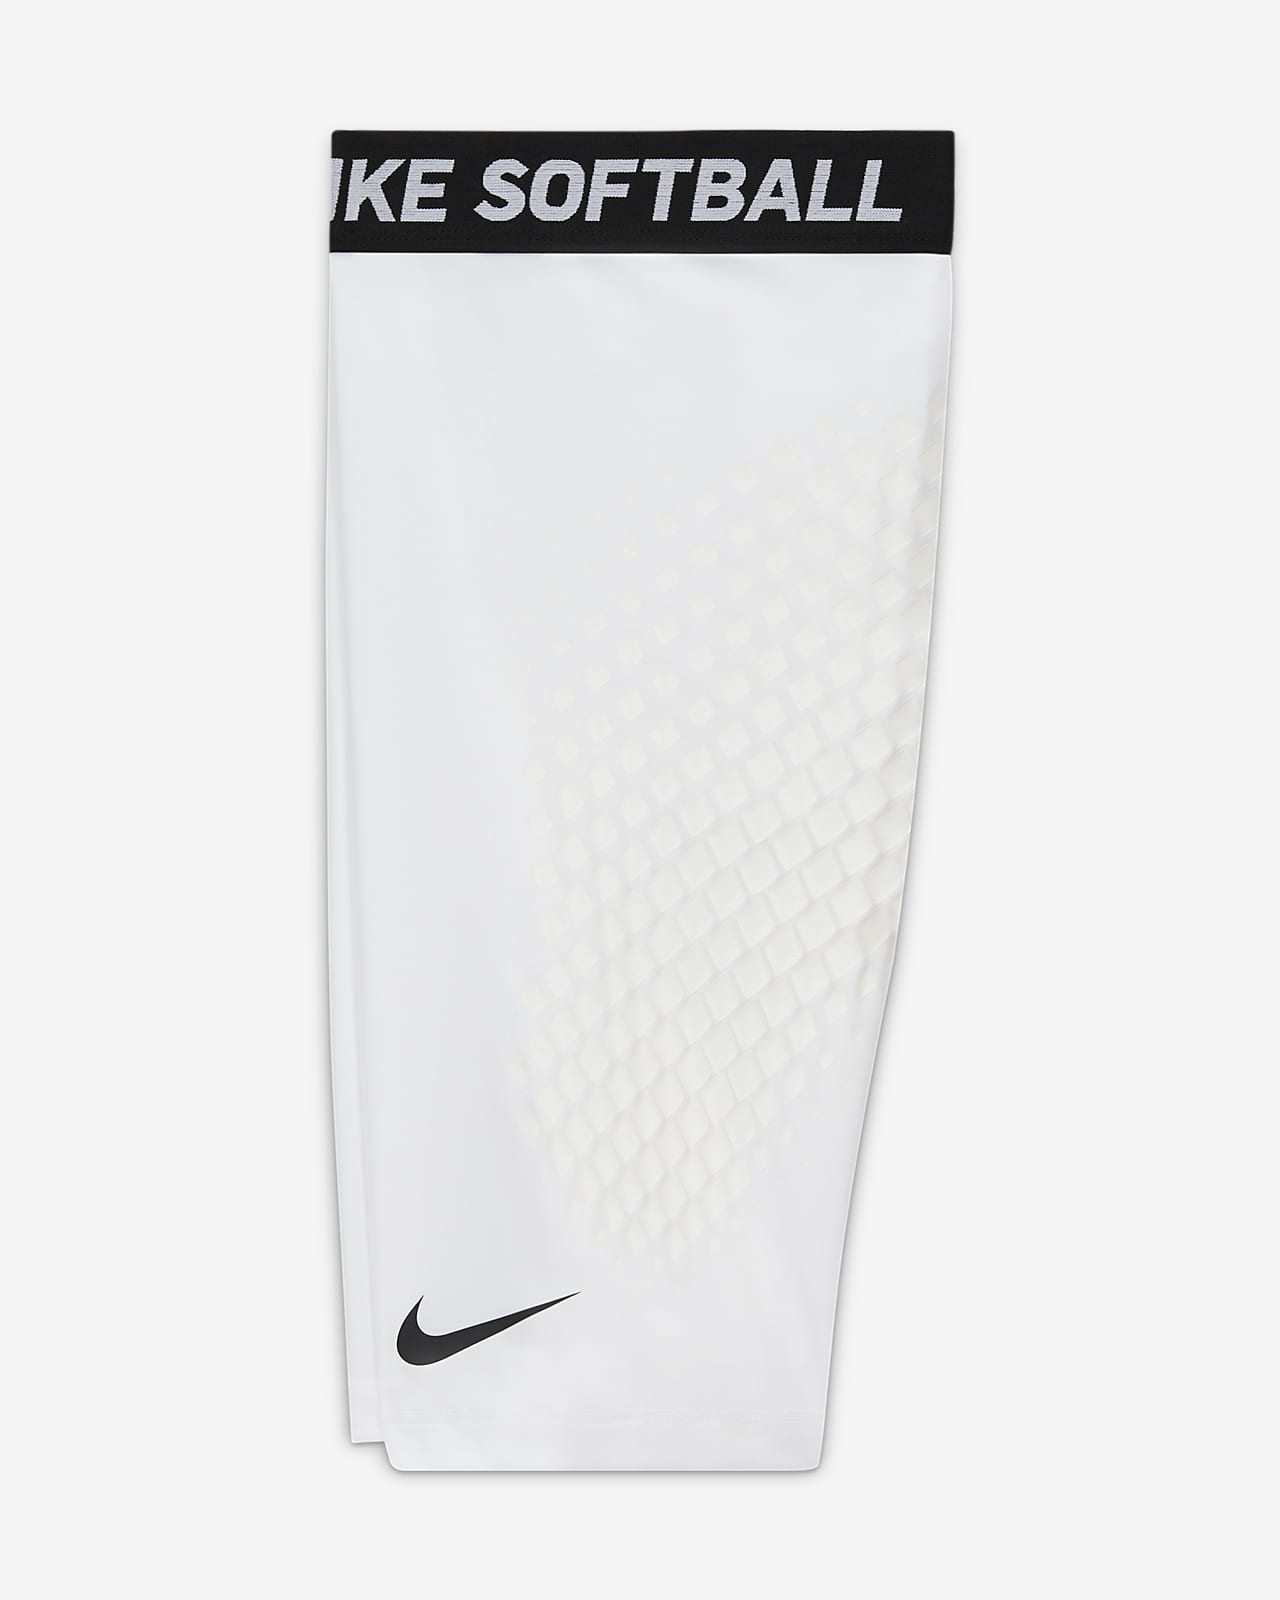 Used Nike PRO COMBAT SR XL SLIDING SHORTS XL Baseball and Softball Clothing  Baseball and Softball Clothing